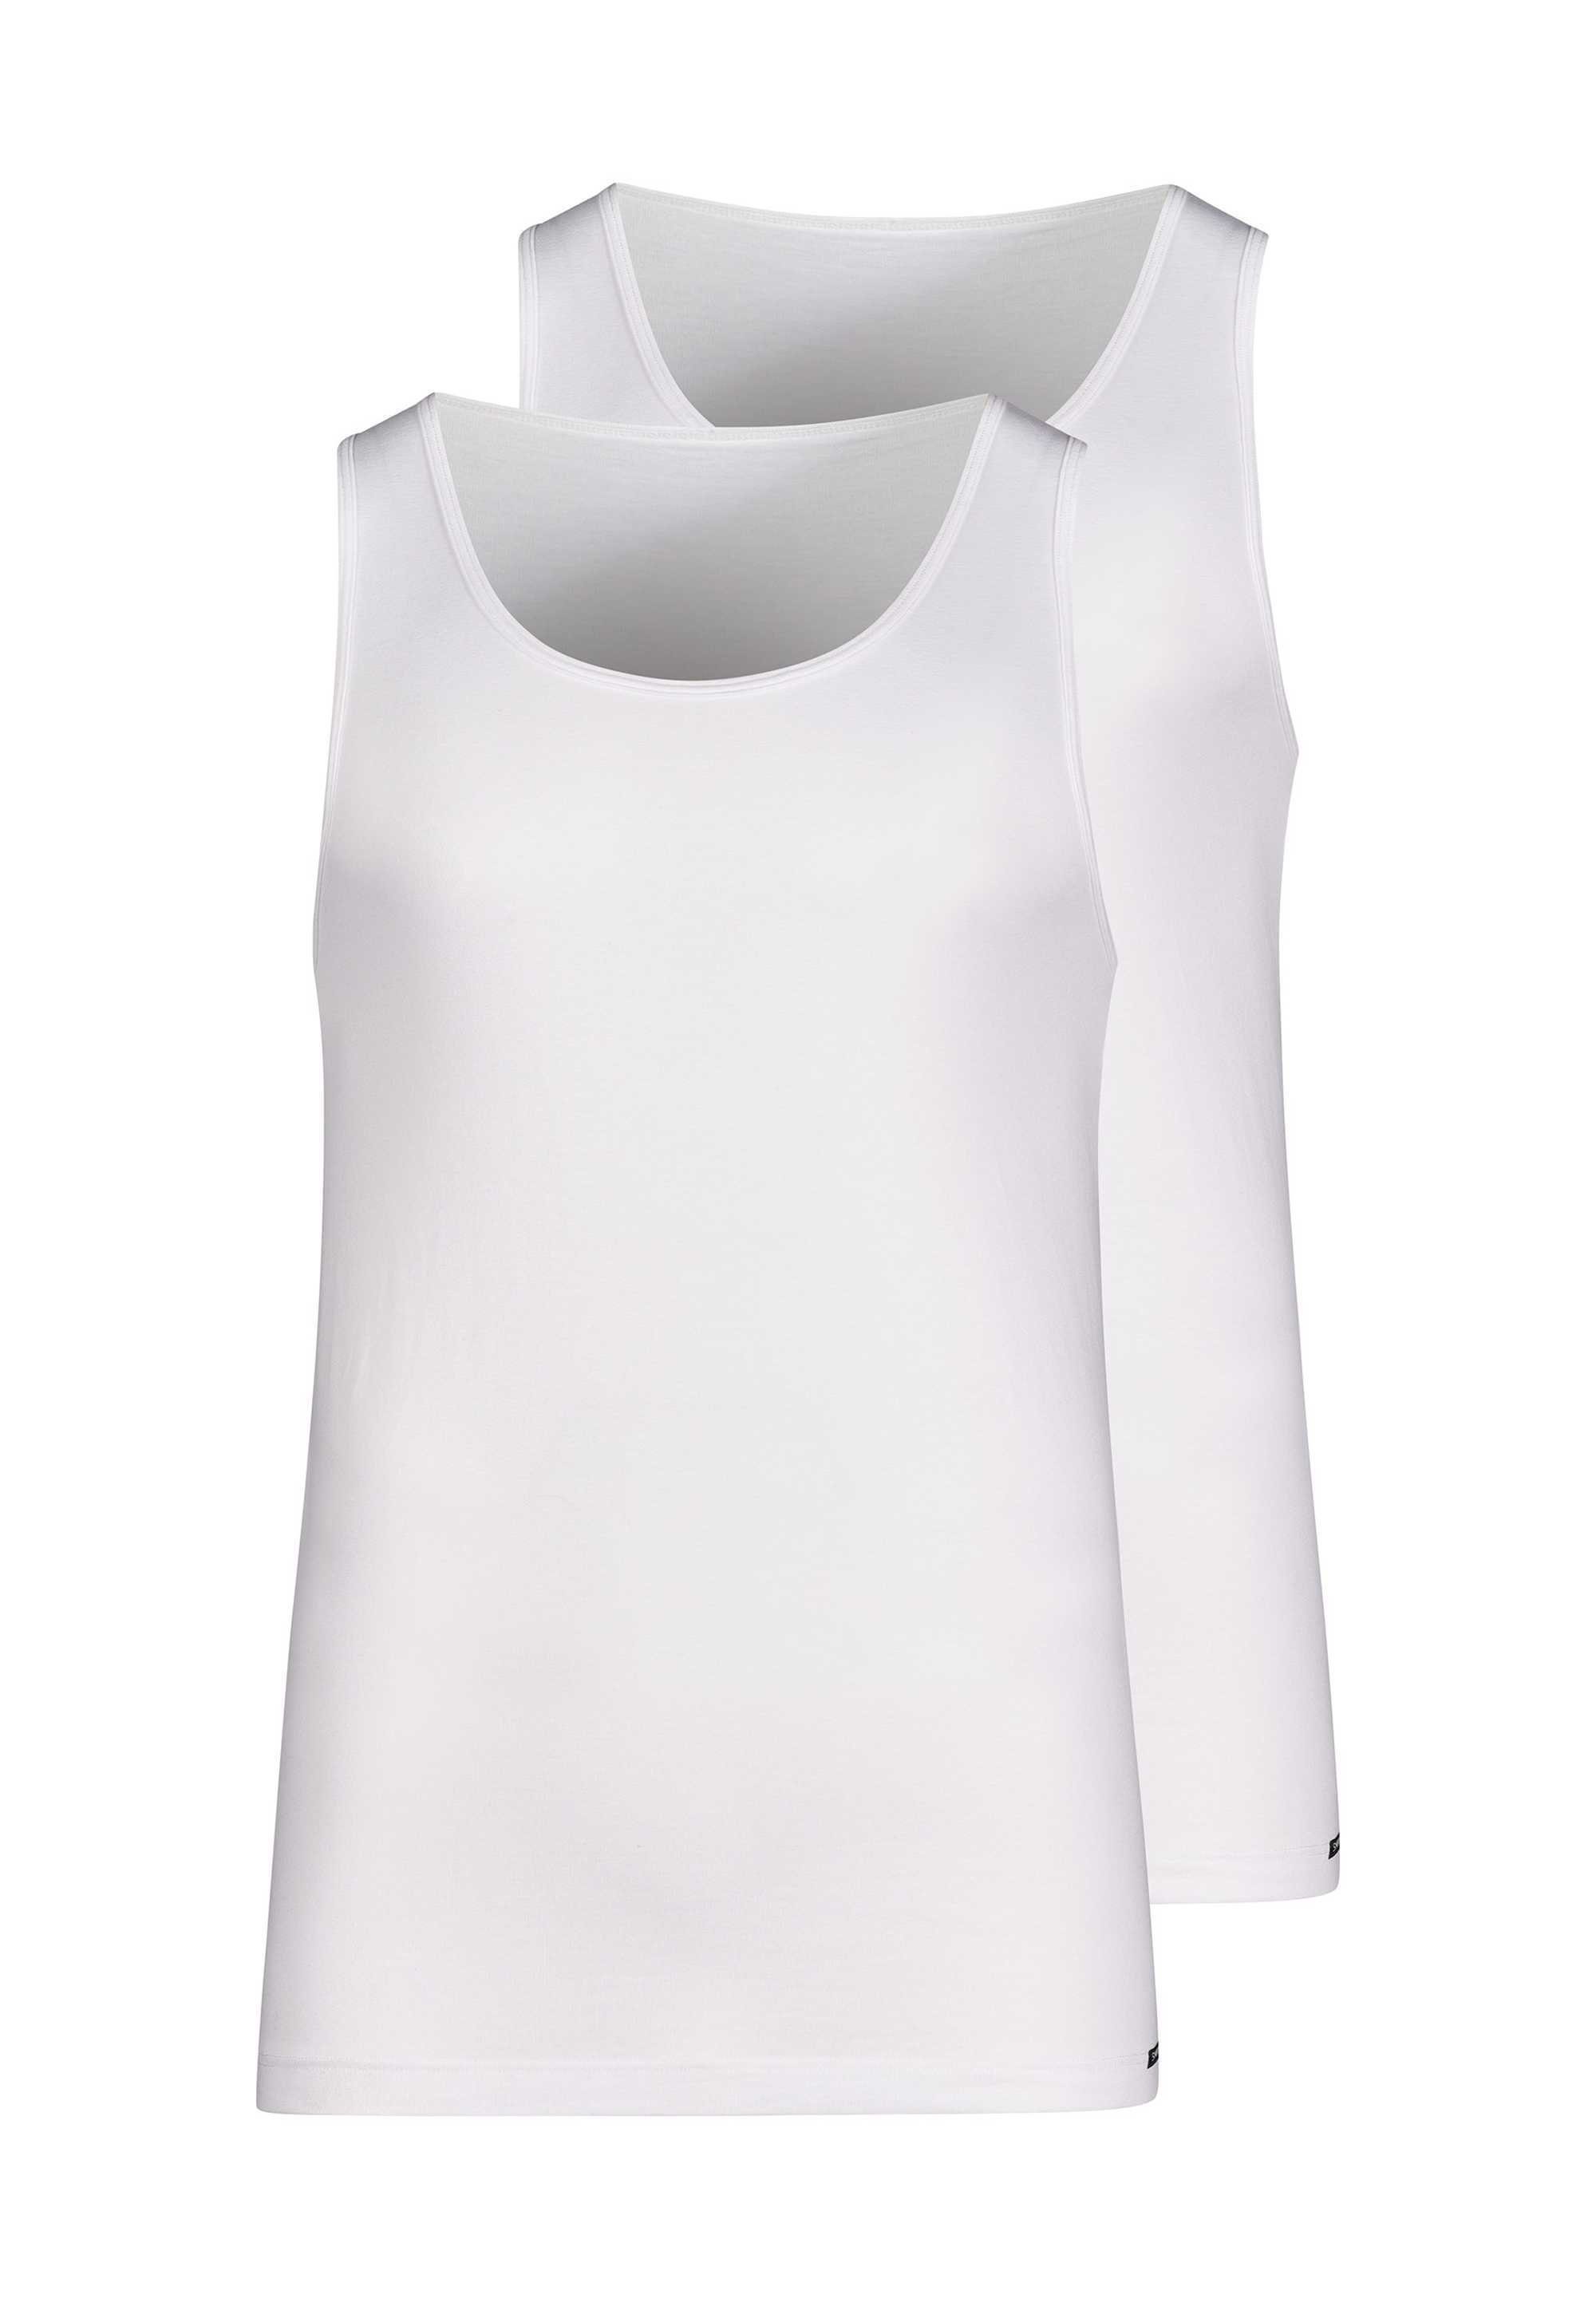 Skiny Unterhemd Herren Tank Top, 2er Pack - Cotton Advantage Weiß